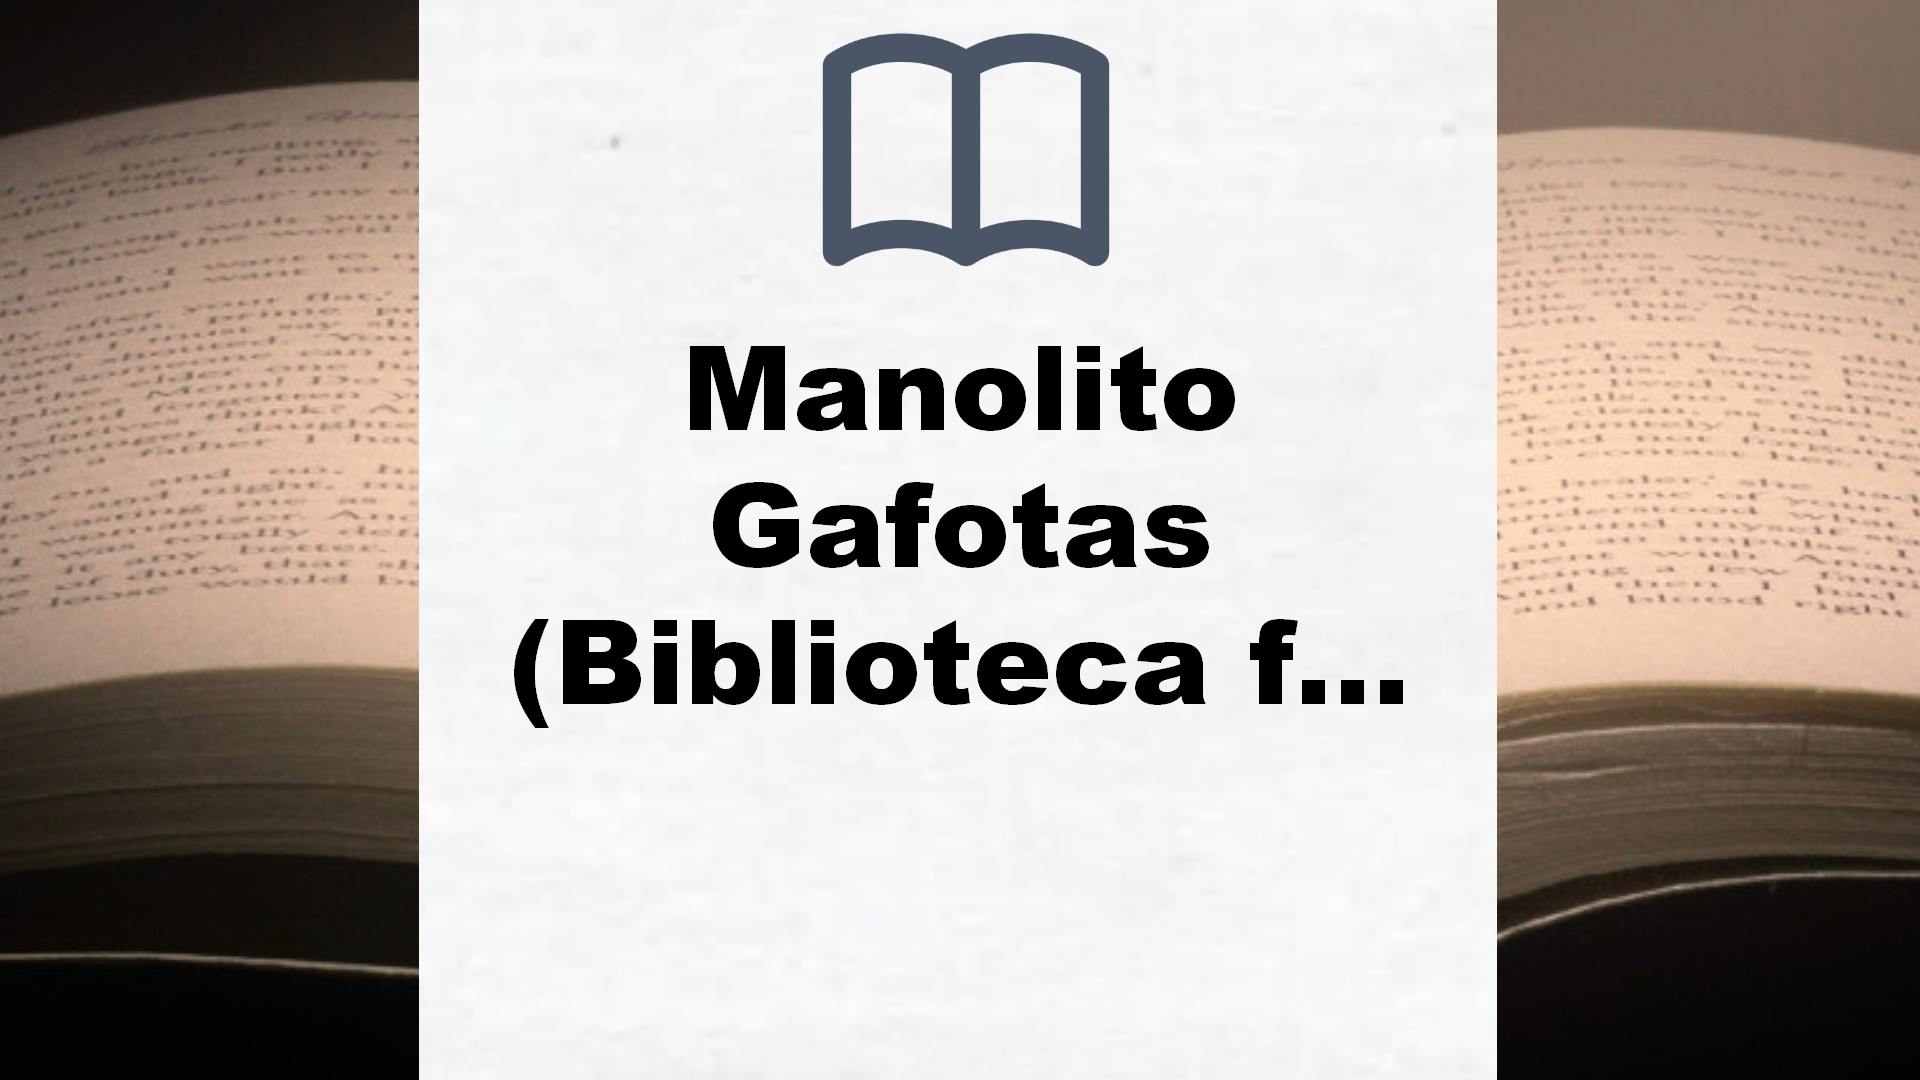 Manolito Gafotas (Biblioteca furtiva) – Reseña del libro